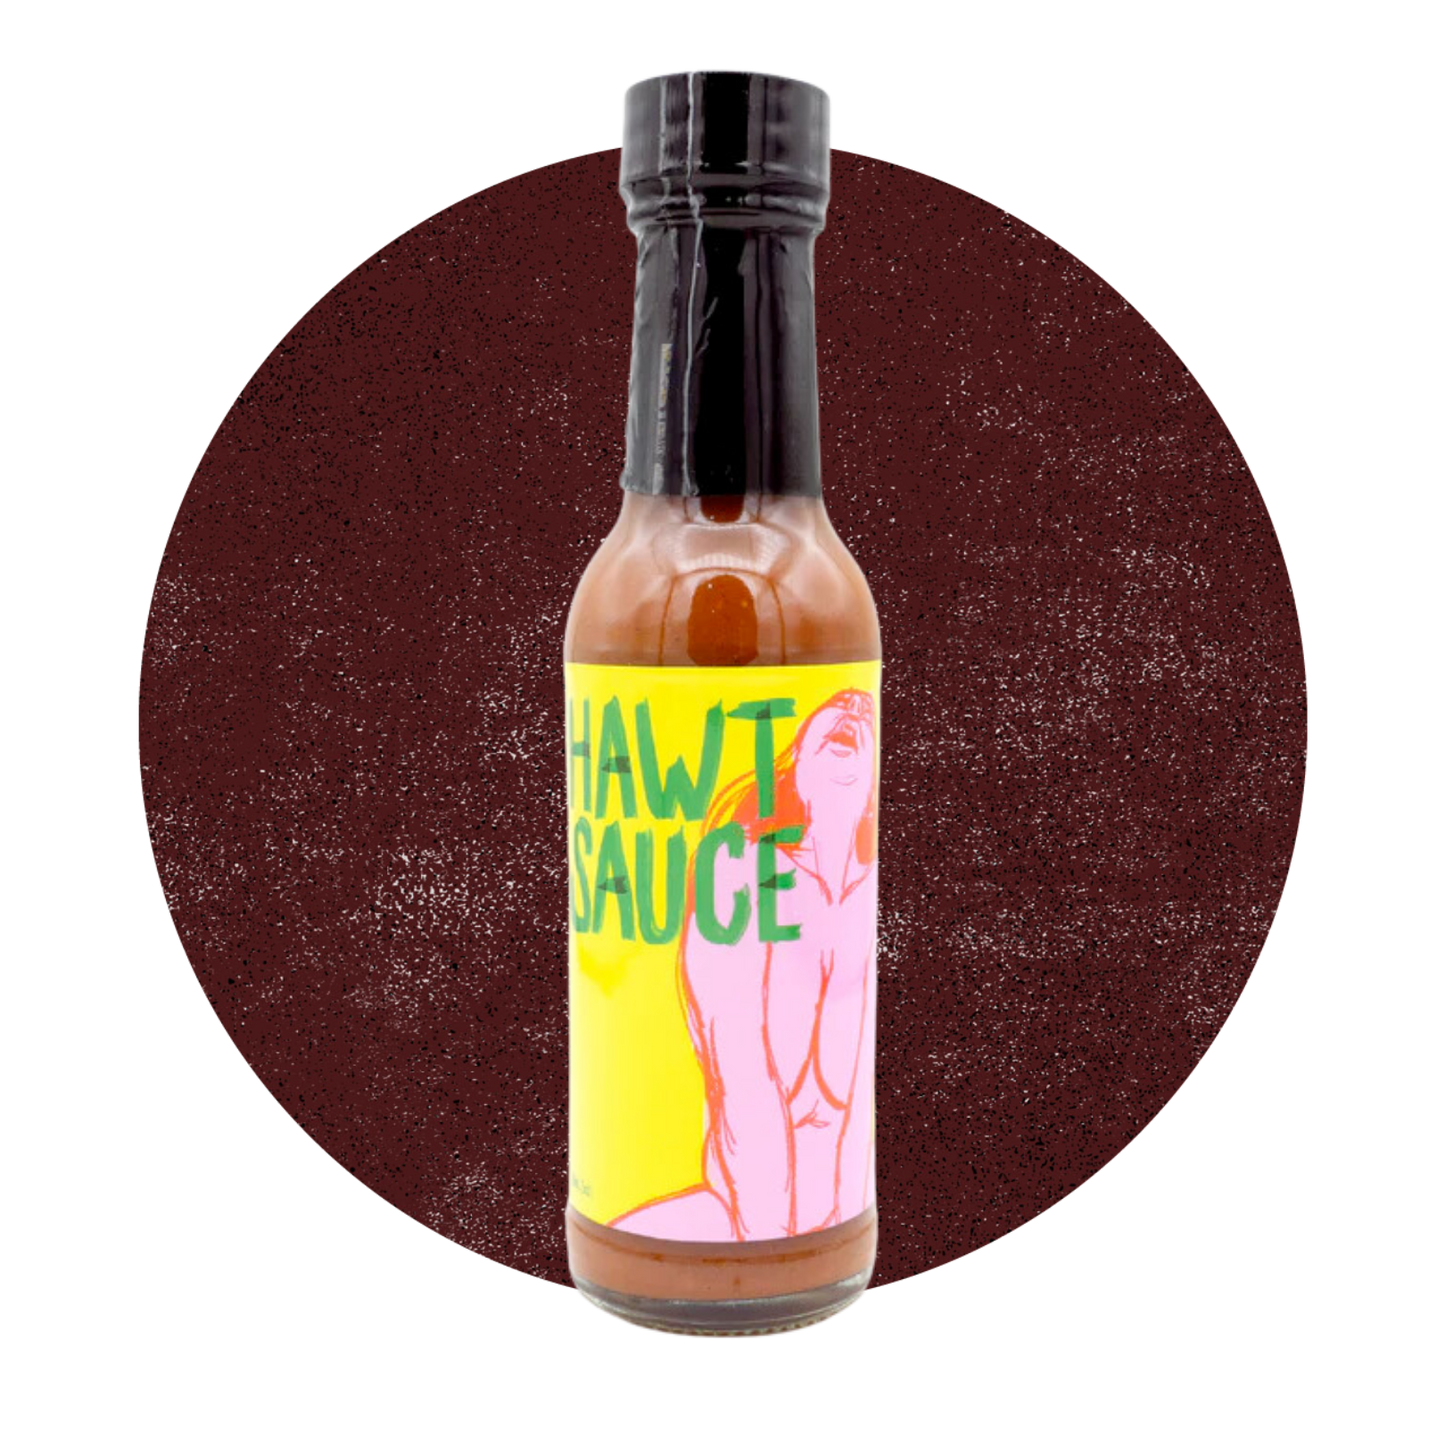 Derek's Hawt Sauce